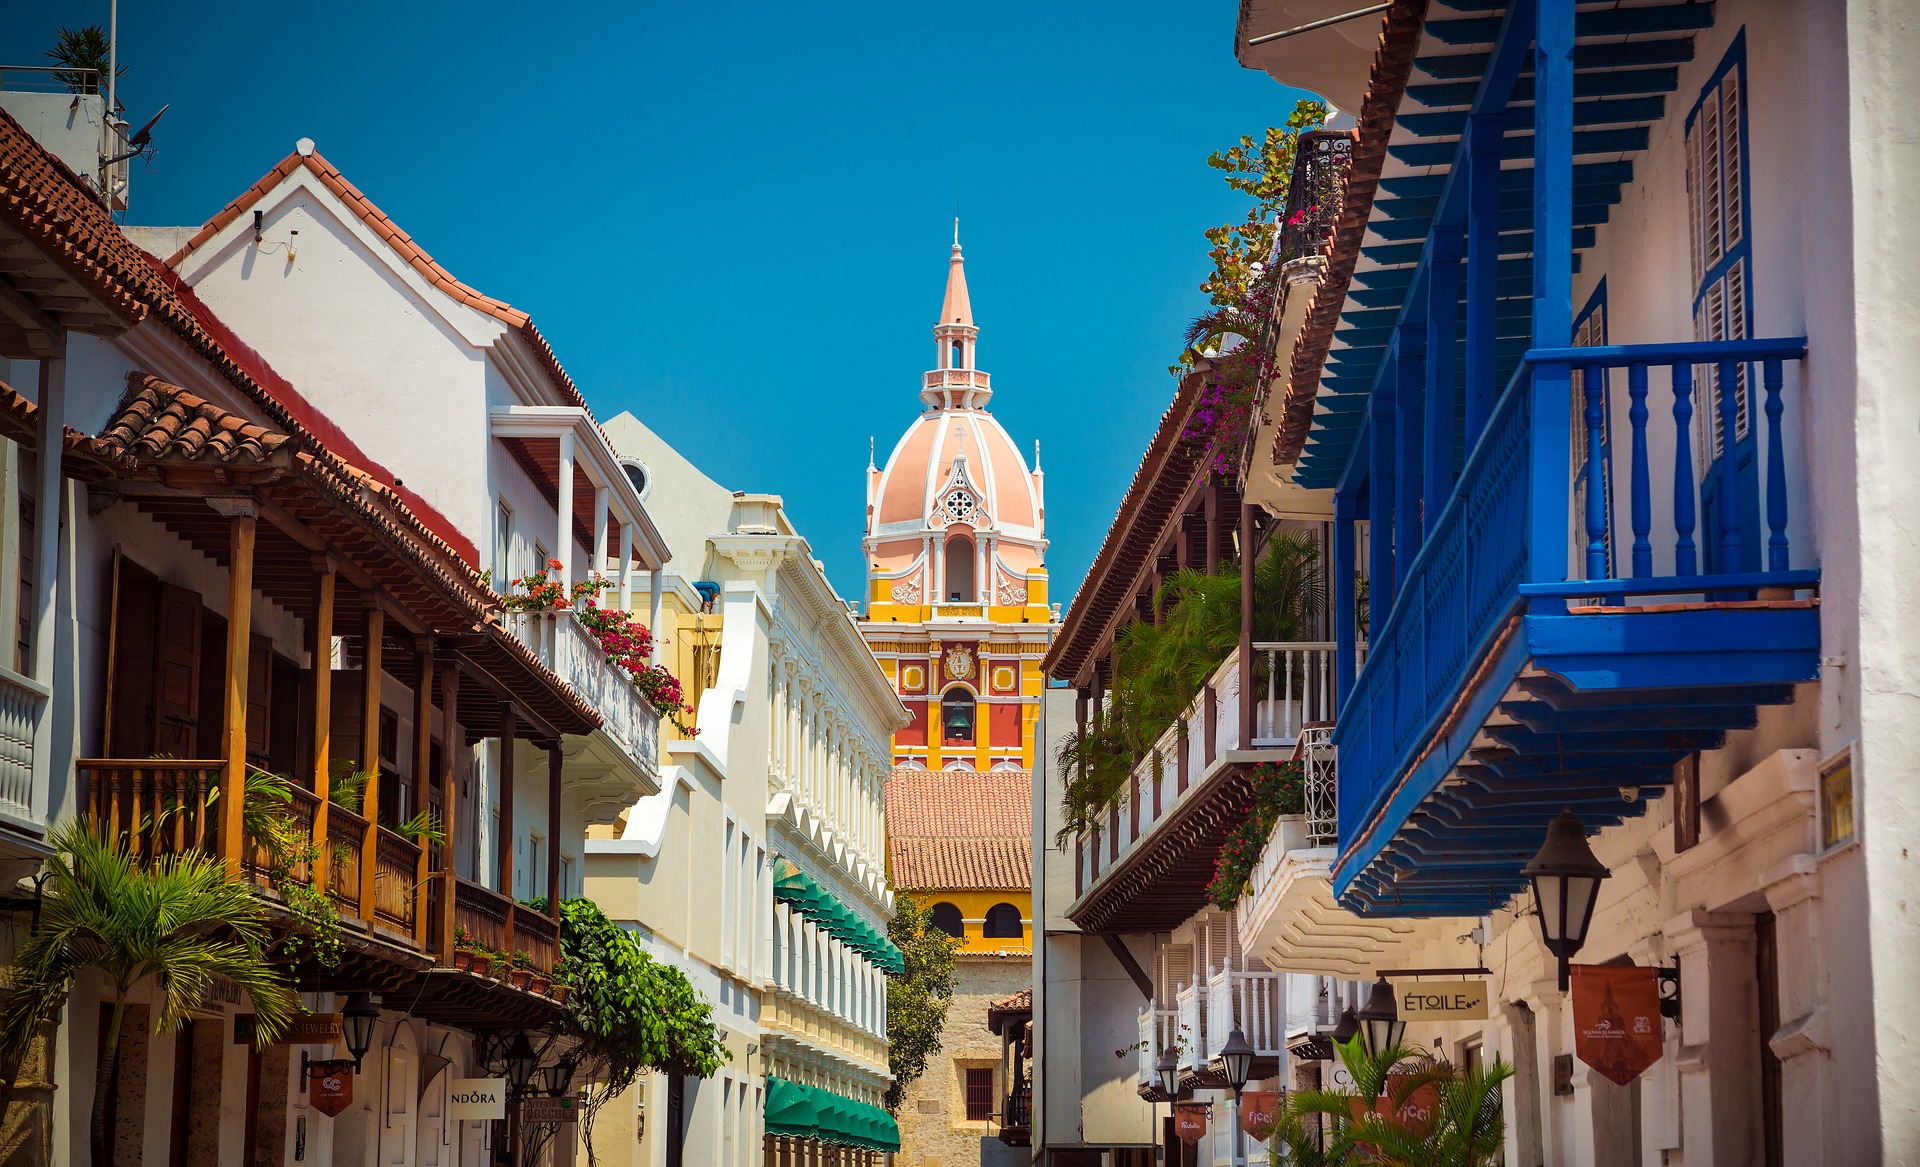 Cartagena de Indias se ubivó entre las 25 ciudades más lindas del mundo, según un ranking internacional. Pixabay